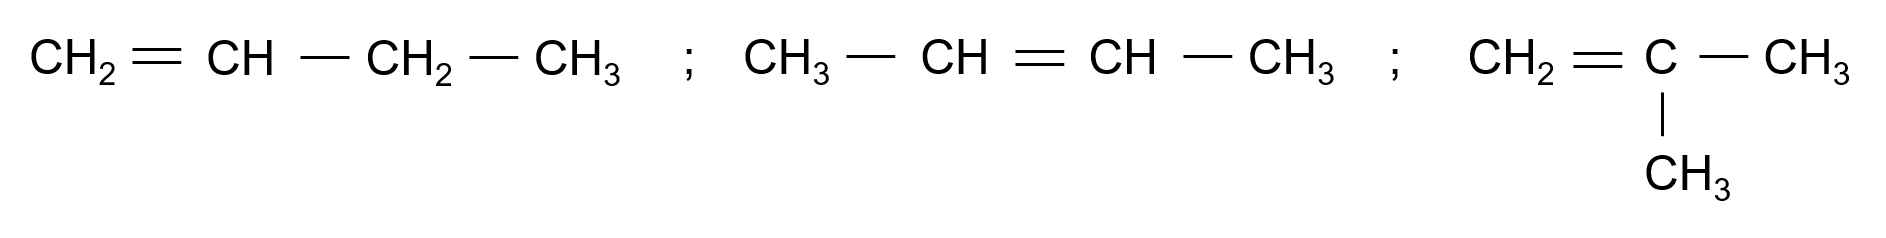 Đồng phân cấu tạo C4H8 olm.